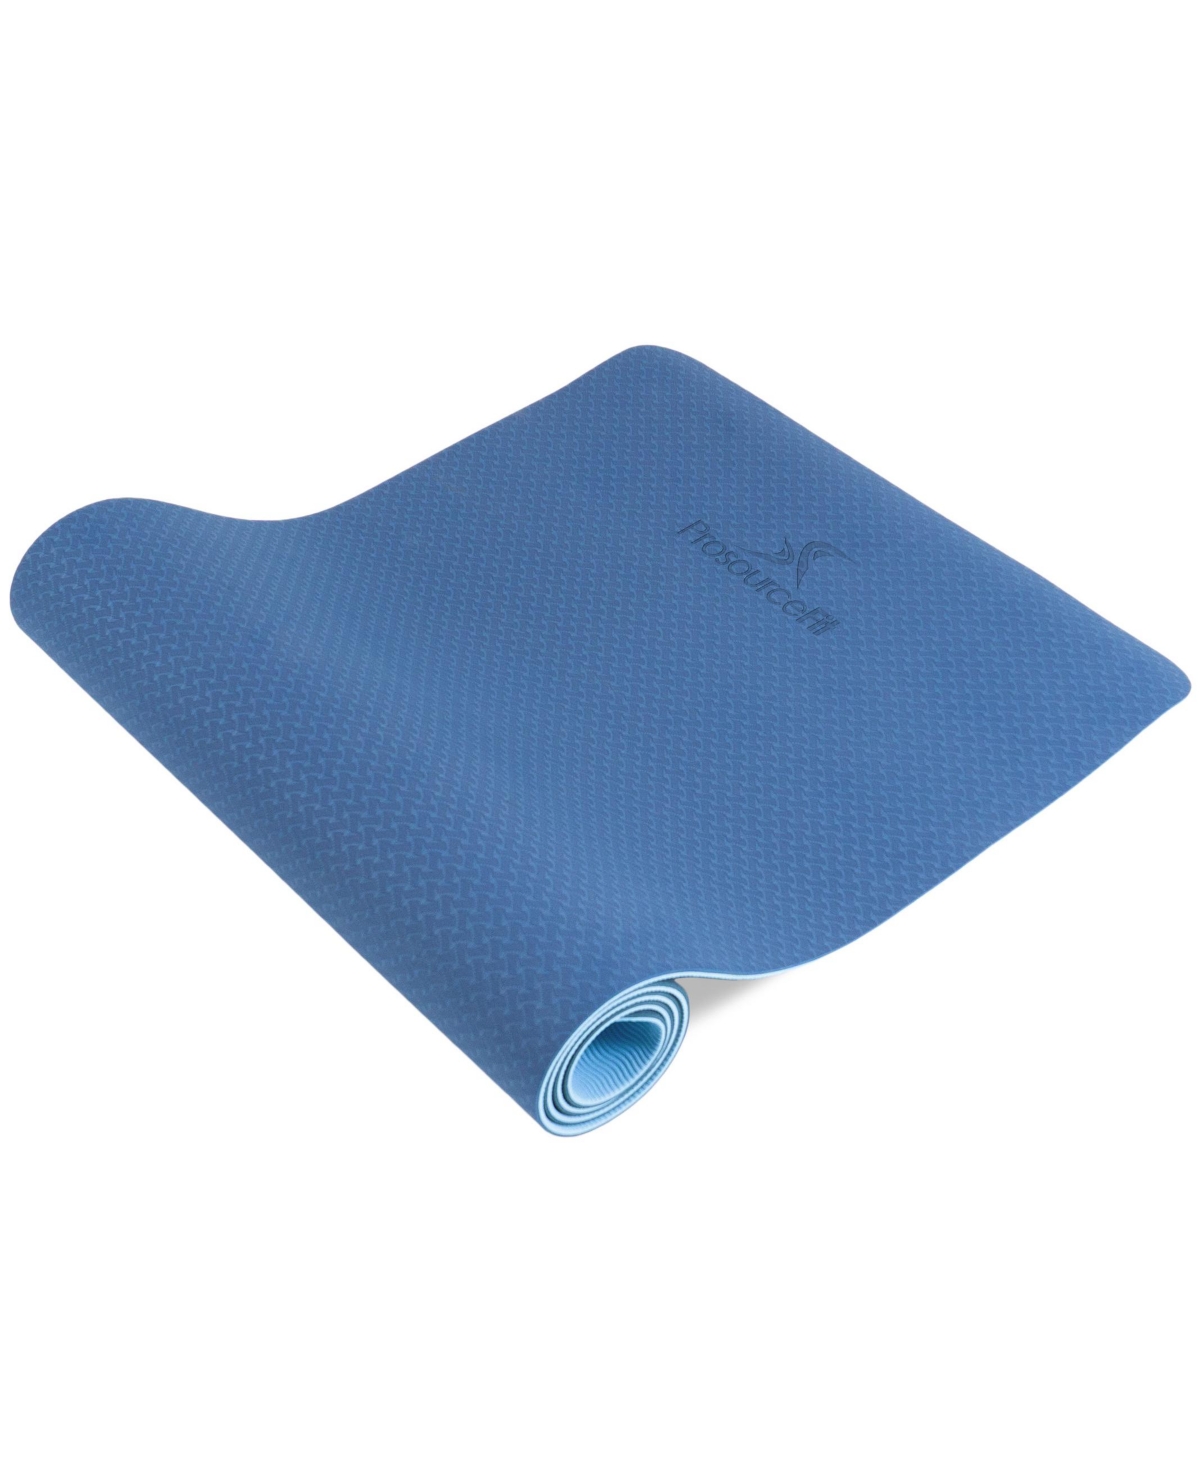 Natura Tpe Yoga Mat 1/4" - Blue/aqua